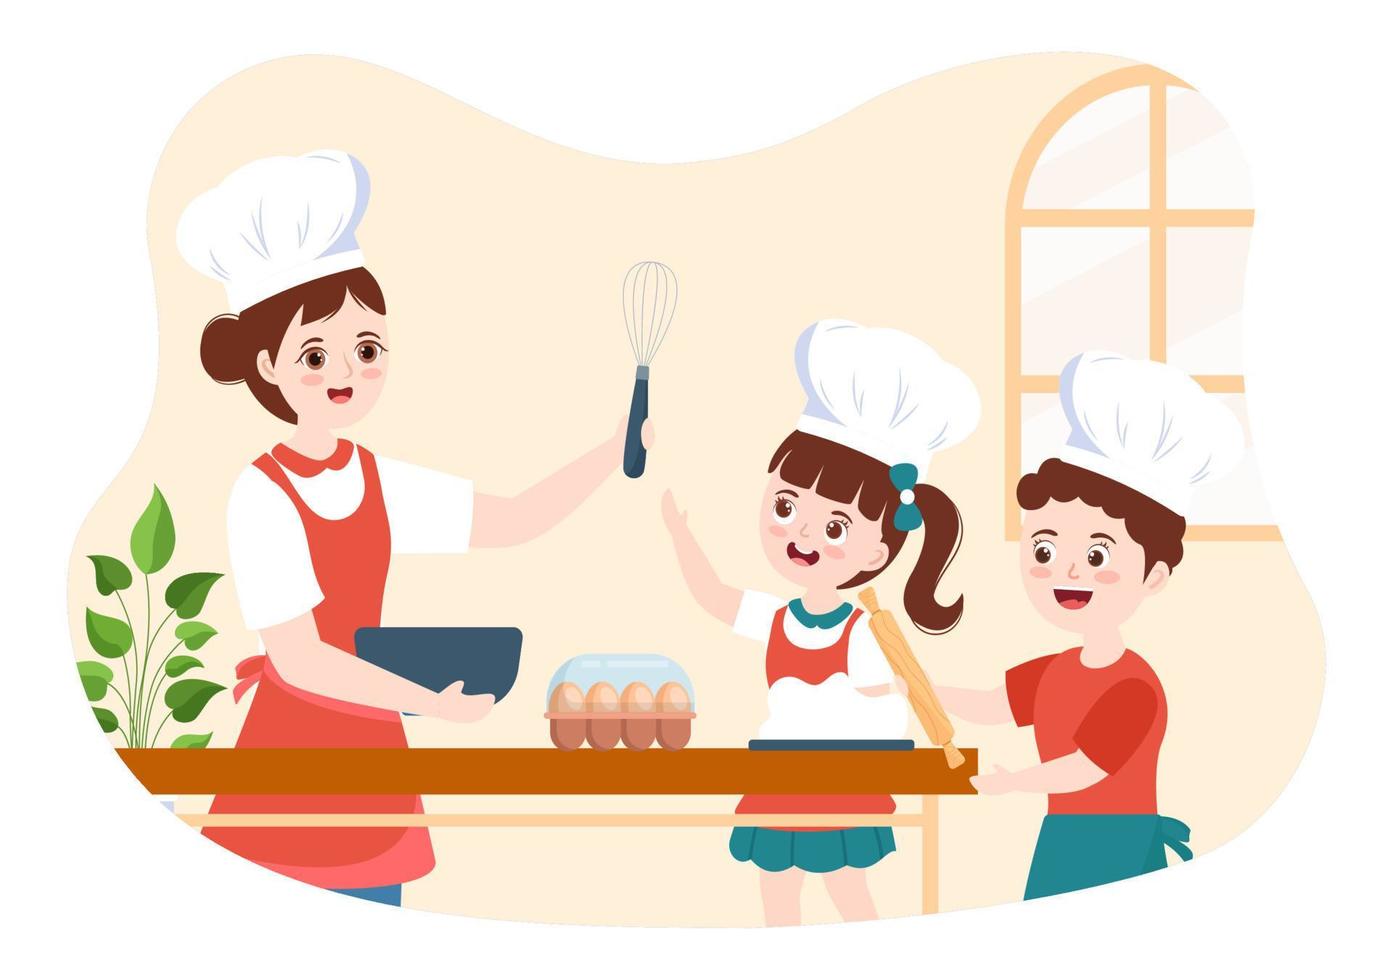 escola de culinária com crianças e professor em uma aula aprendendo a aprender cozinha comida caseira na ilustração de modelos desenhados à mão de desenhos animados planos vetor